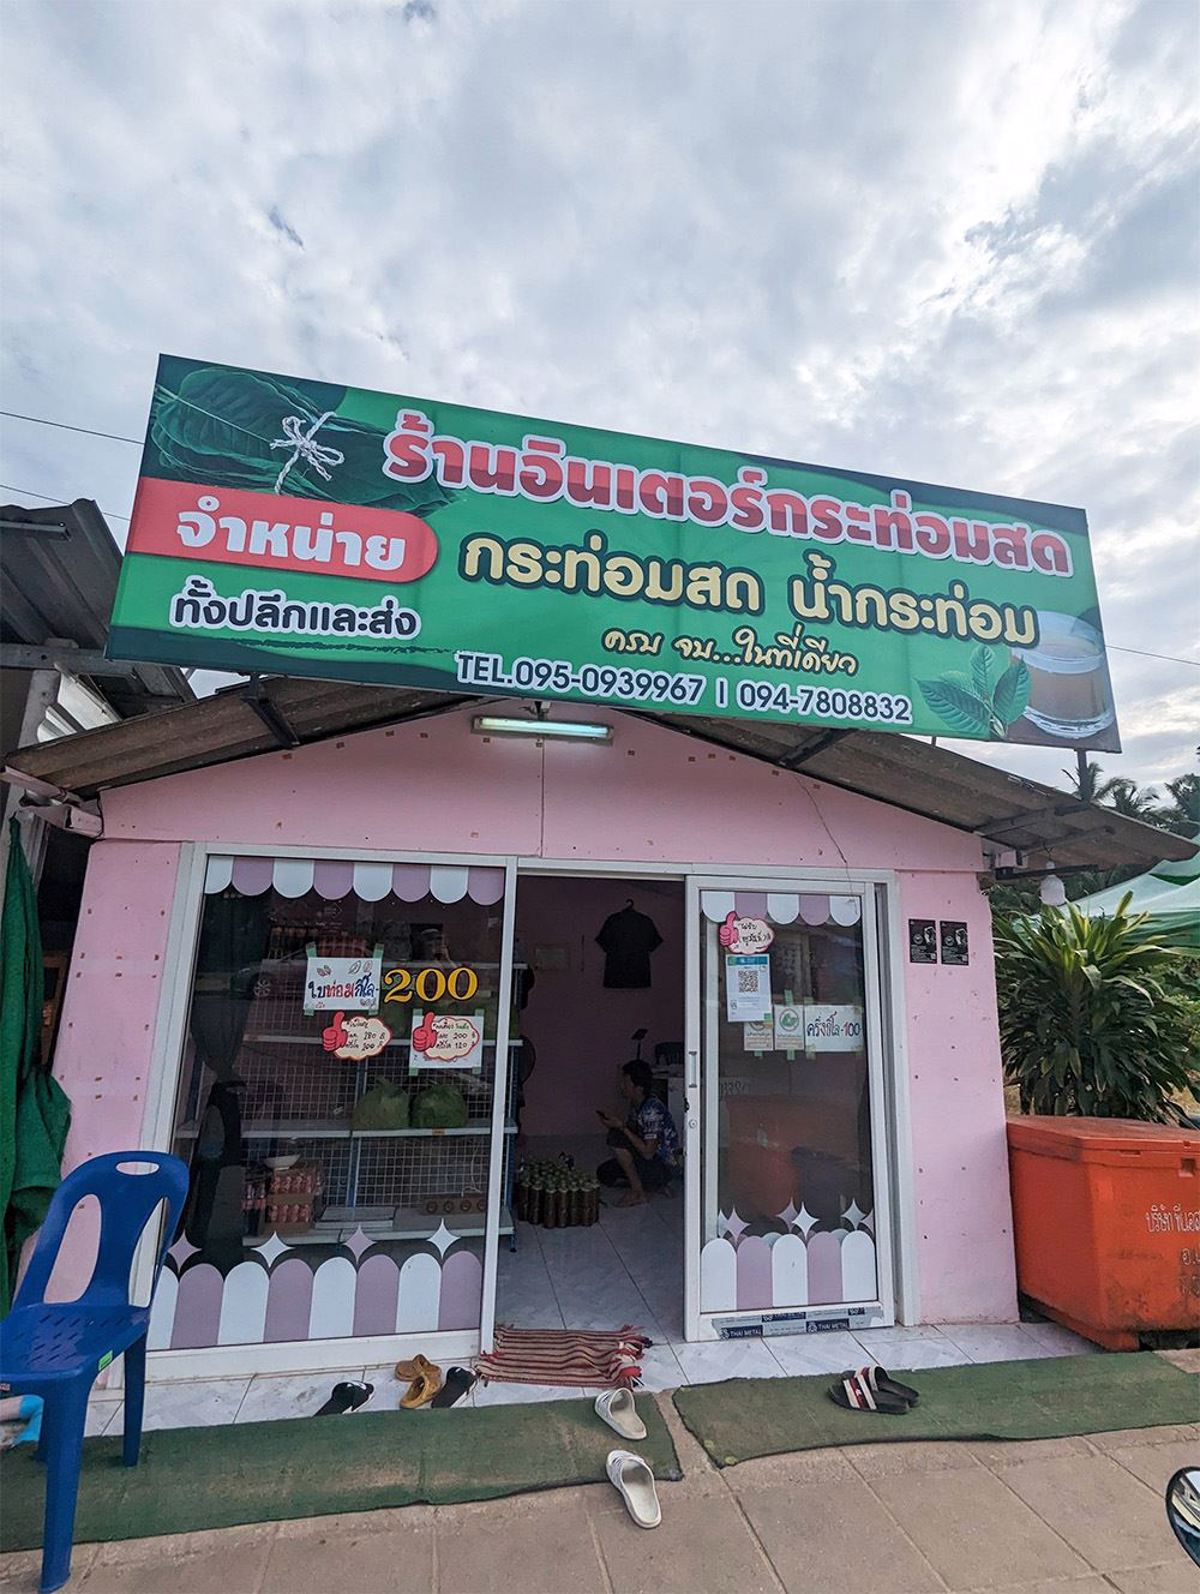 Lokalny sklep z kratomem. Krabi, Tajlandia